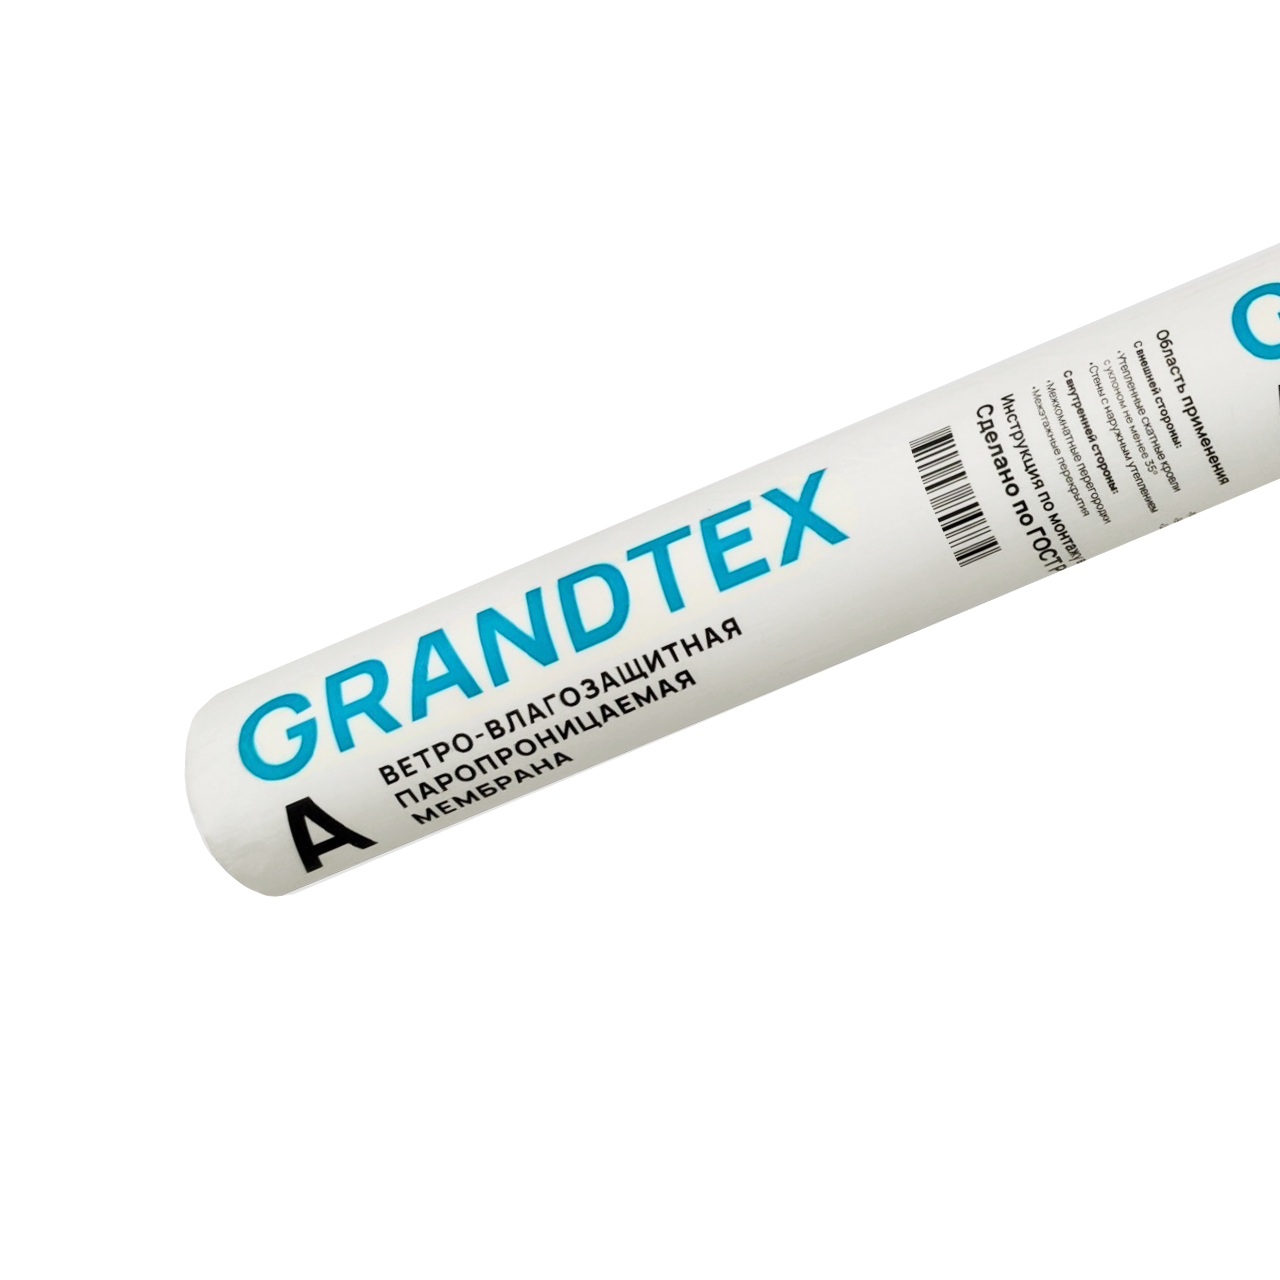 Ветрозащита GRANDTEX A (35кв.м)